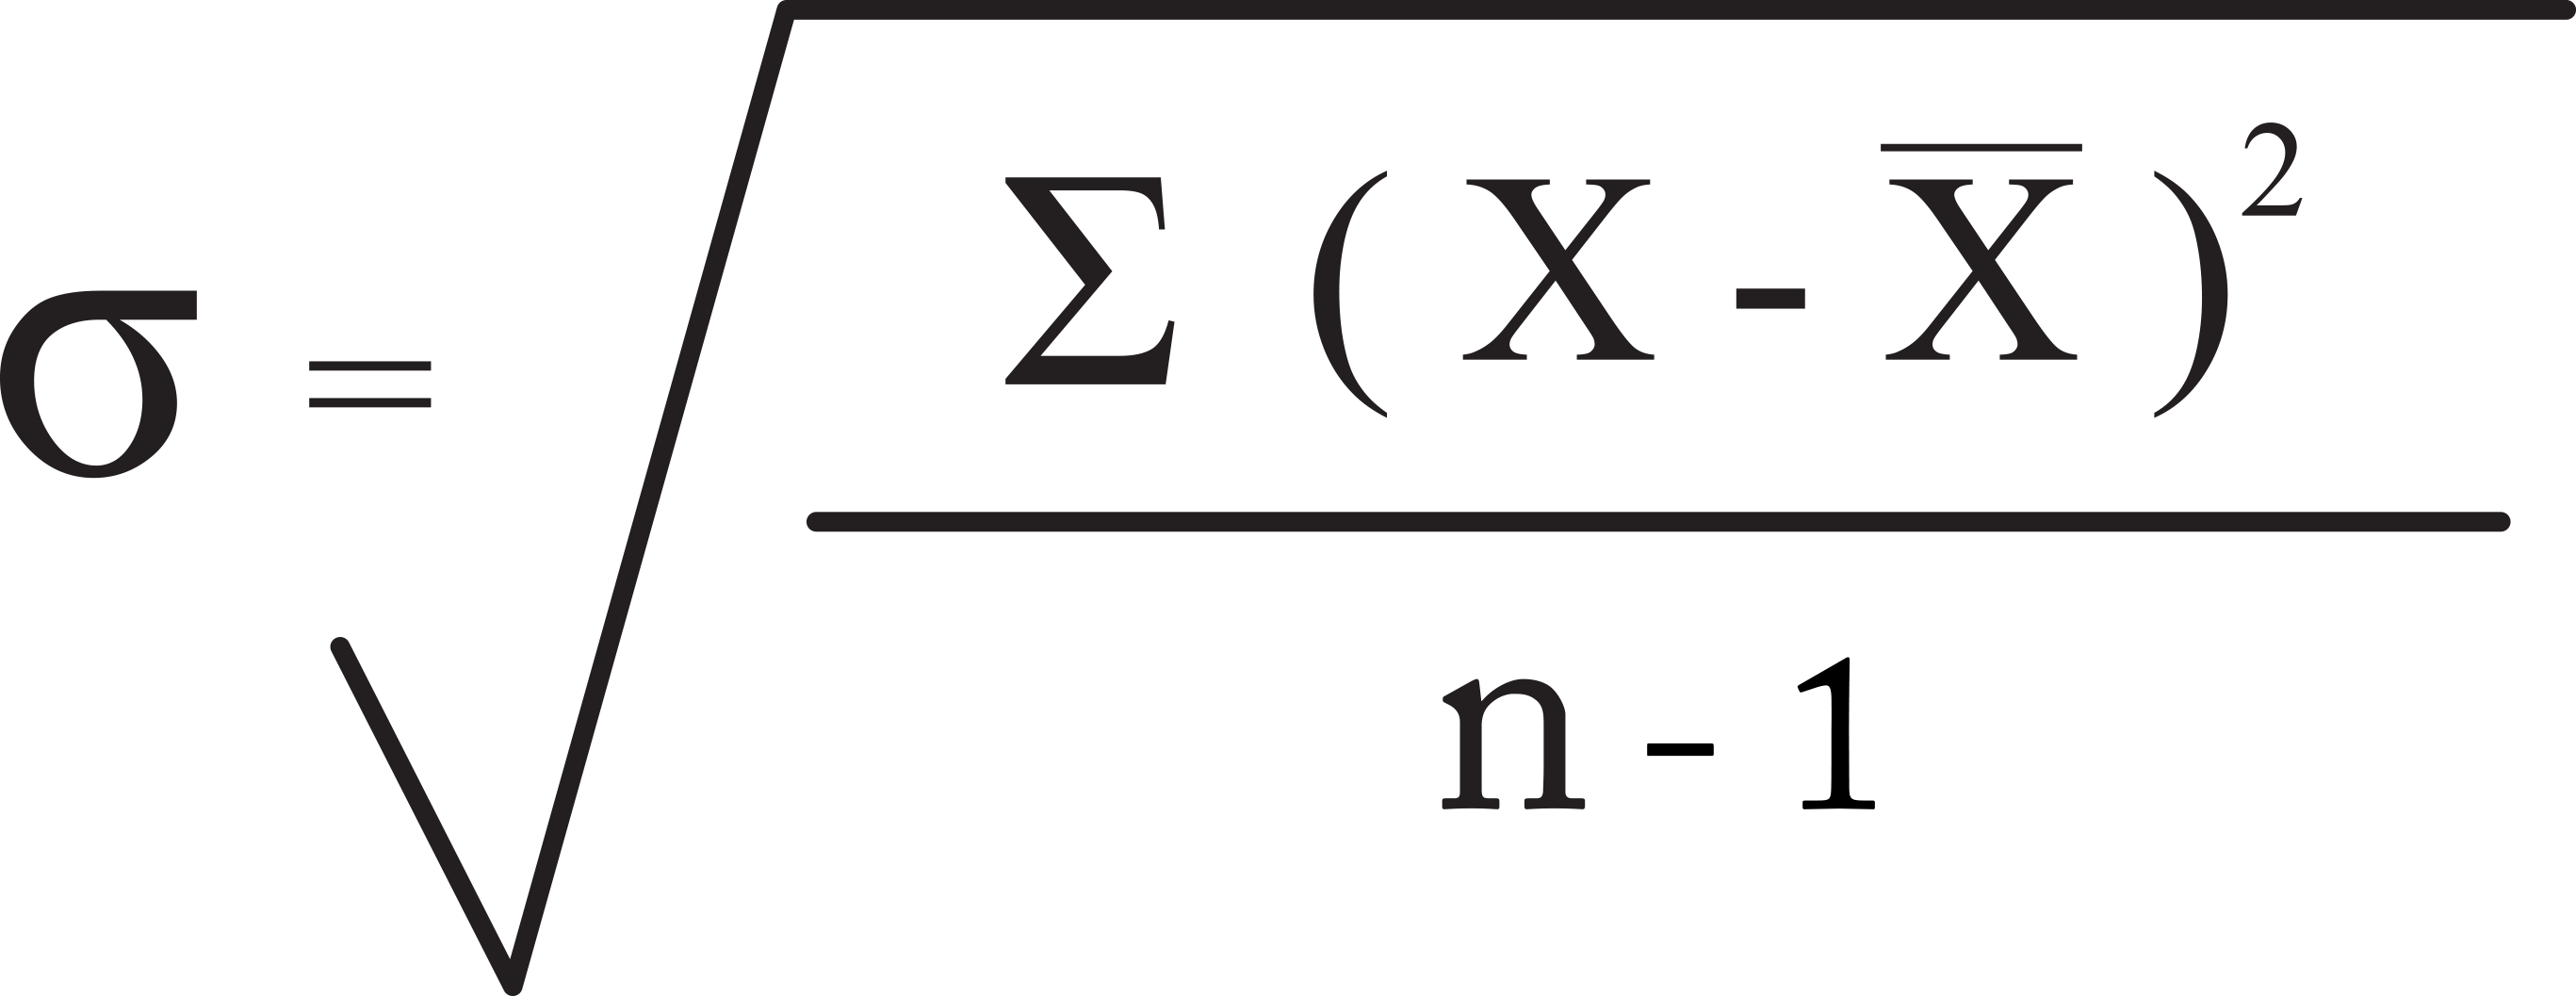 Св формула. Standard deviation формула. Formula for Standard deviation. Формула Сигмы в статистике. Среднеквадратическое отклонение формула.